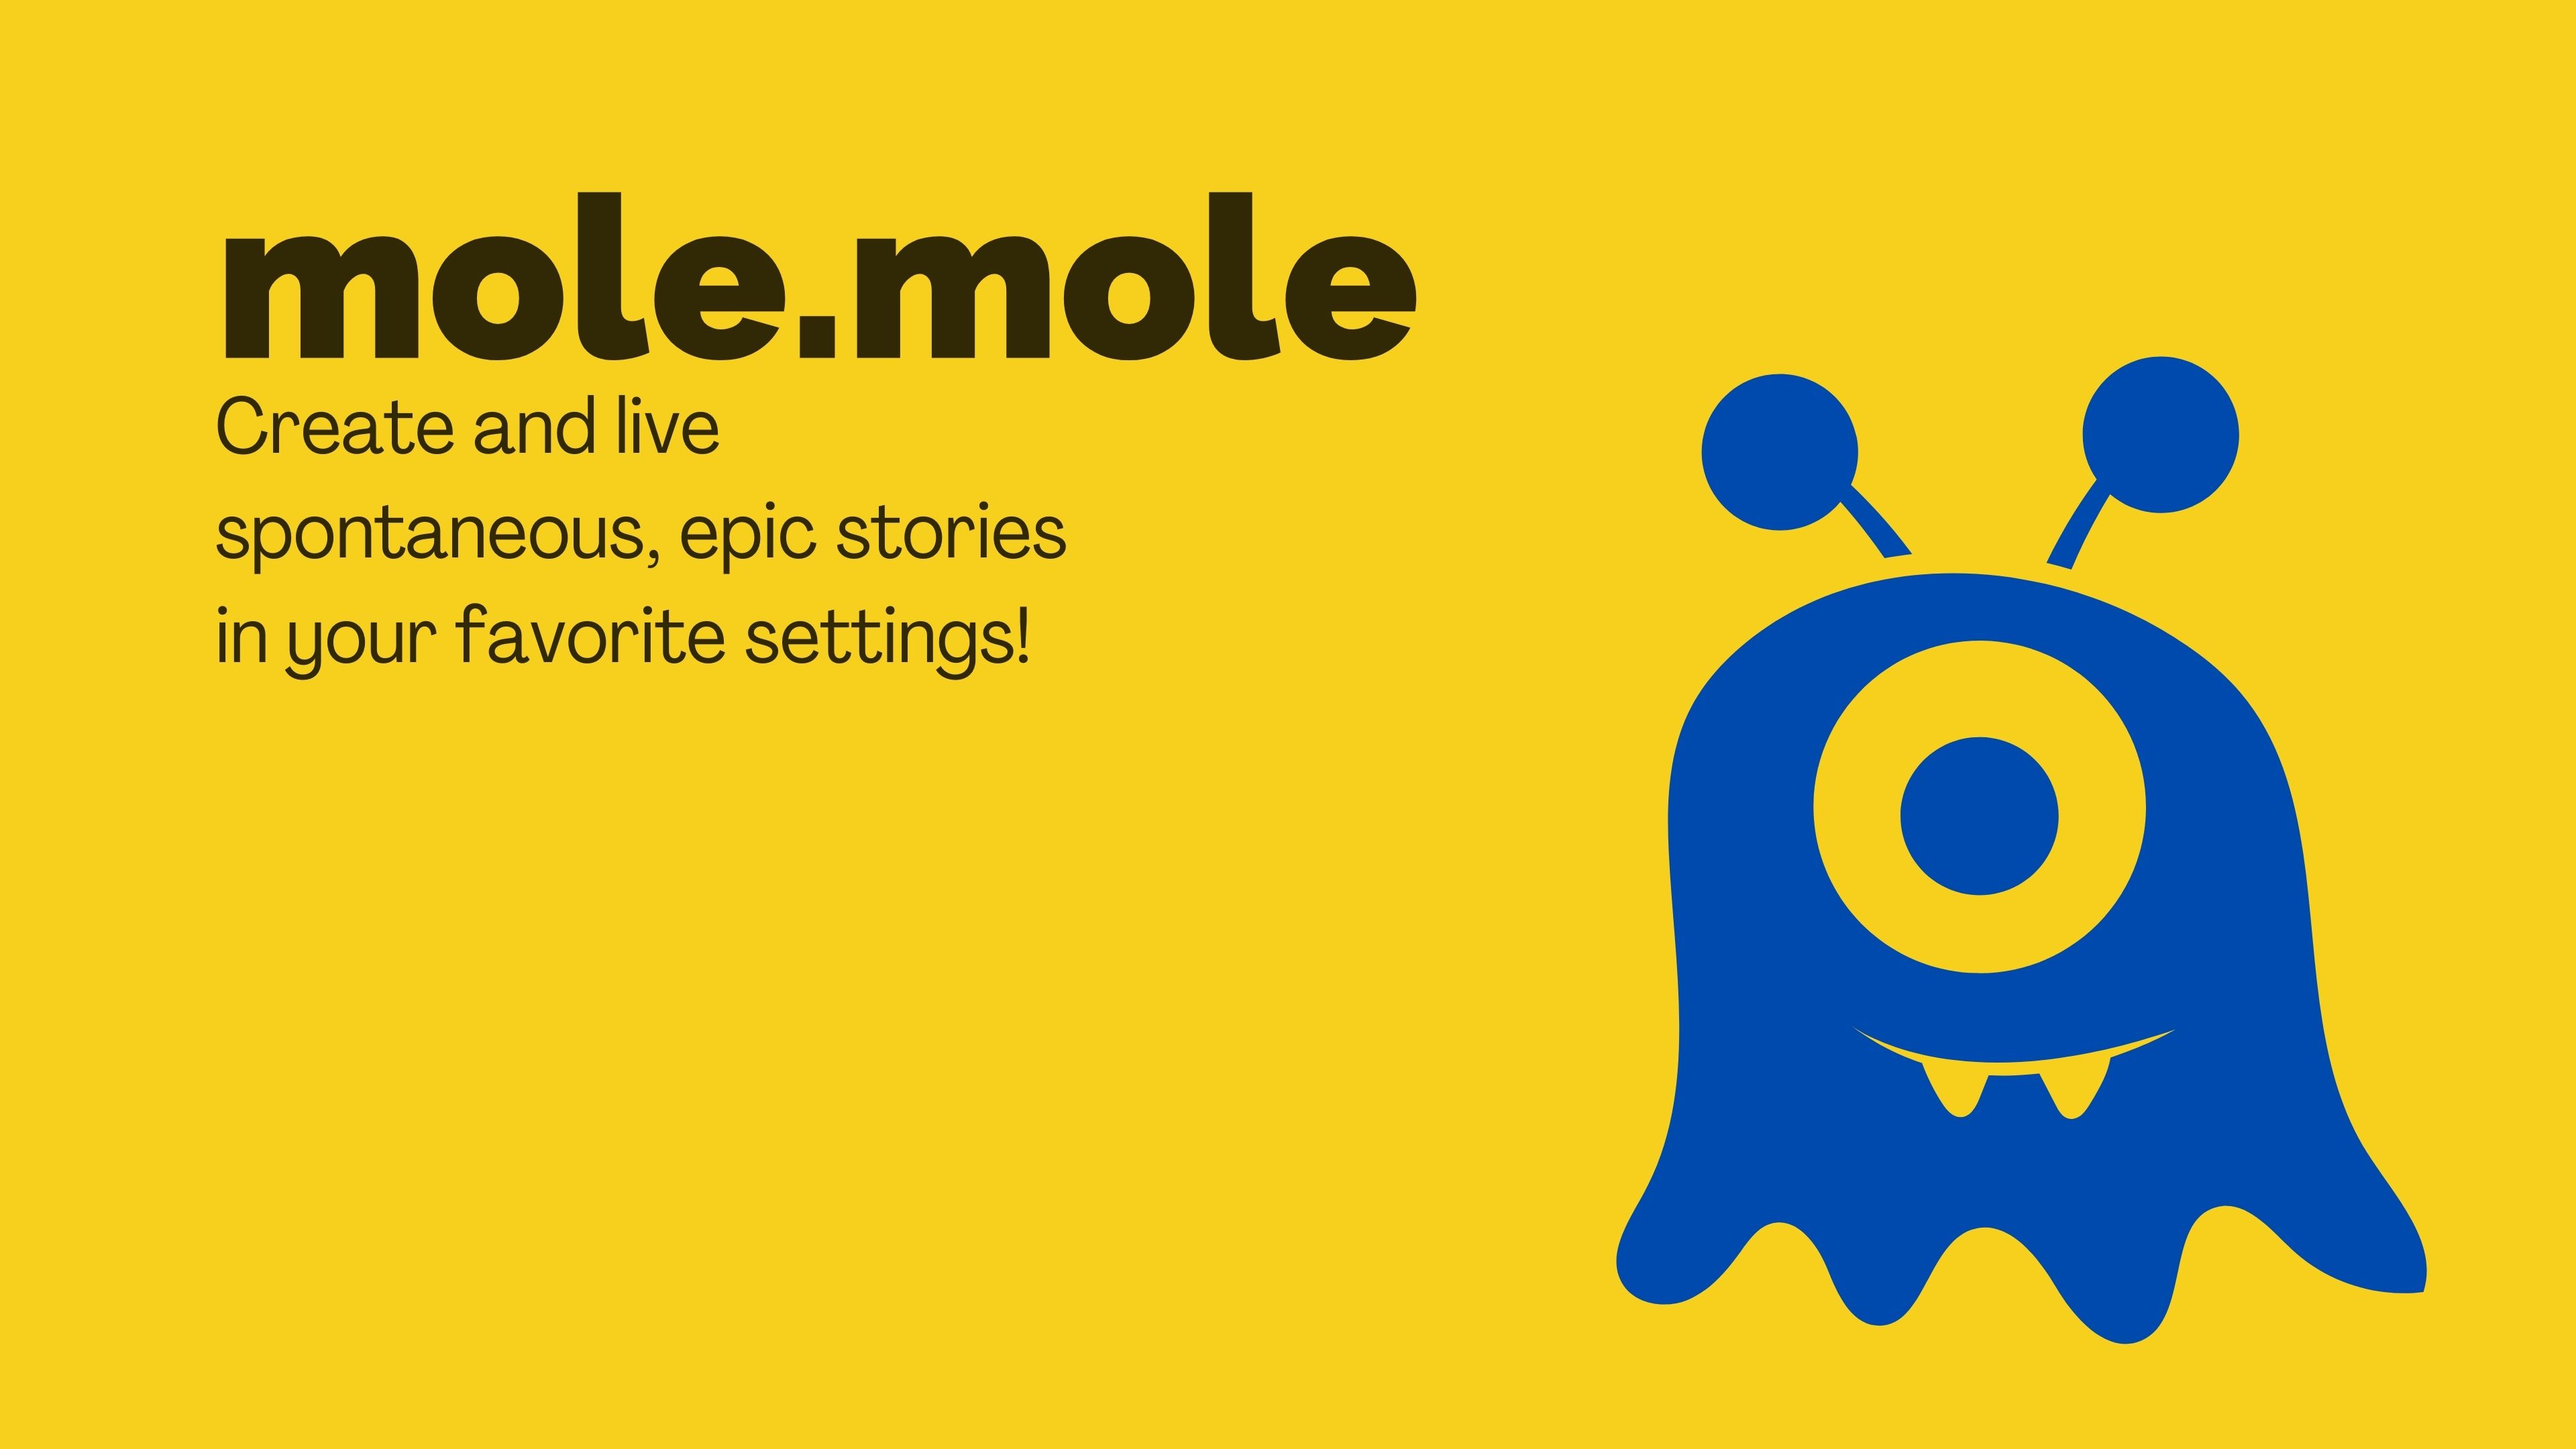 mole.mole